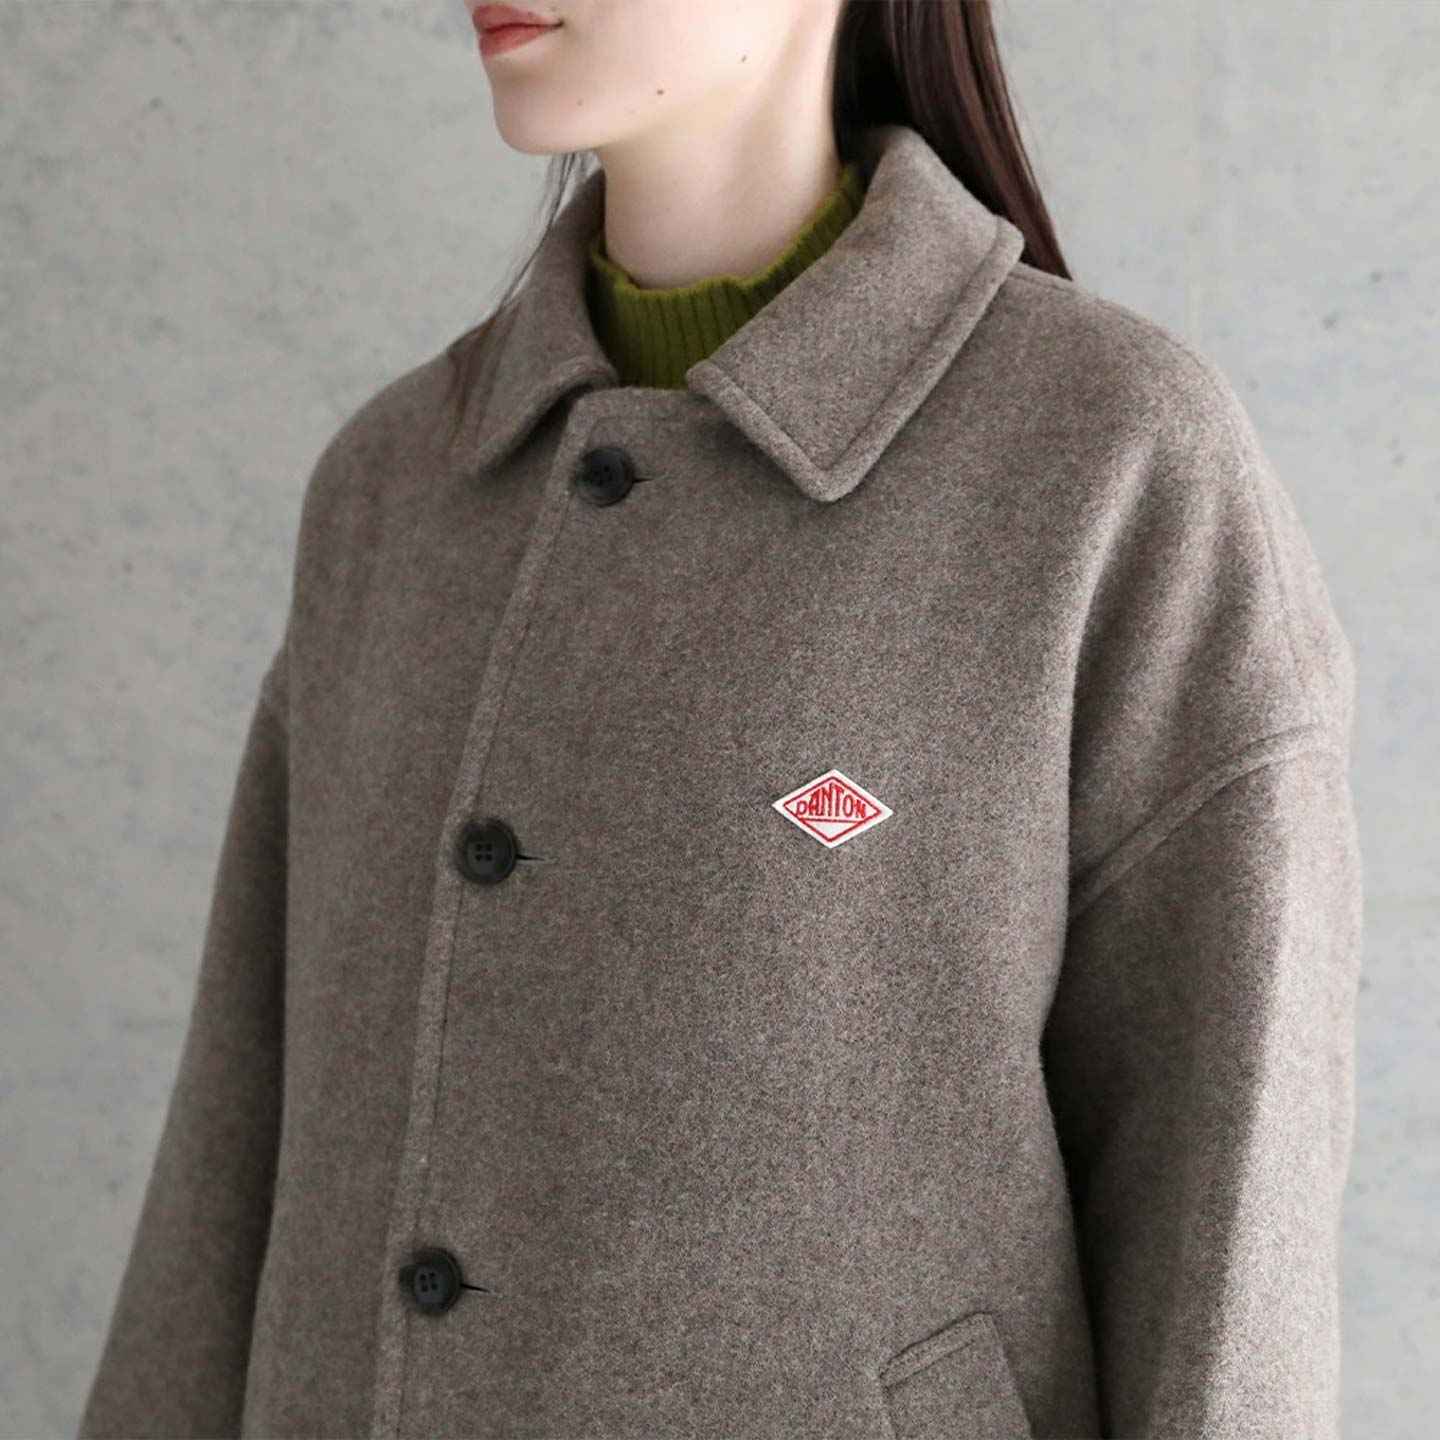 & Workwear 1905 - store Jackets Coats Paris - Concept / L\'O A -